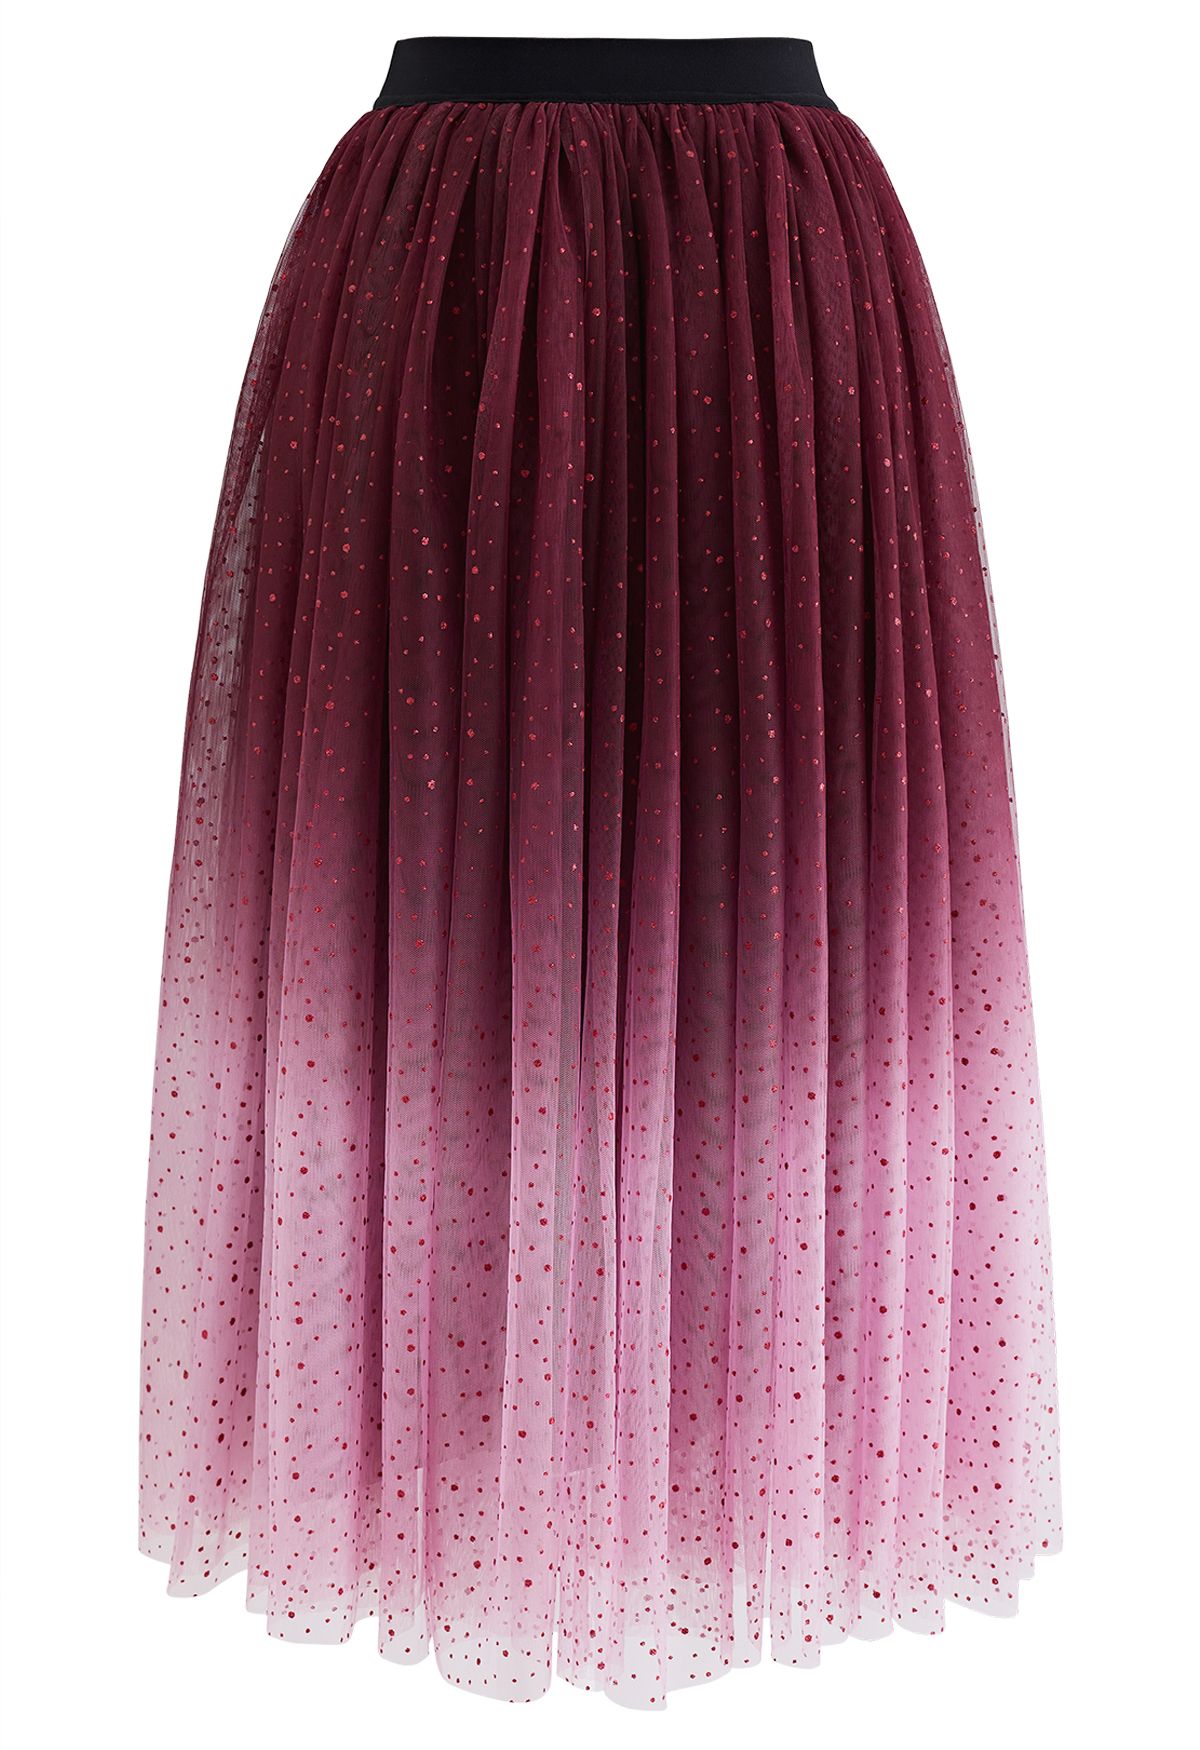 Festive Sparkle Ombre Tulle Midi Skirt in Burgundy